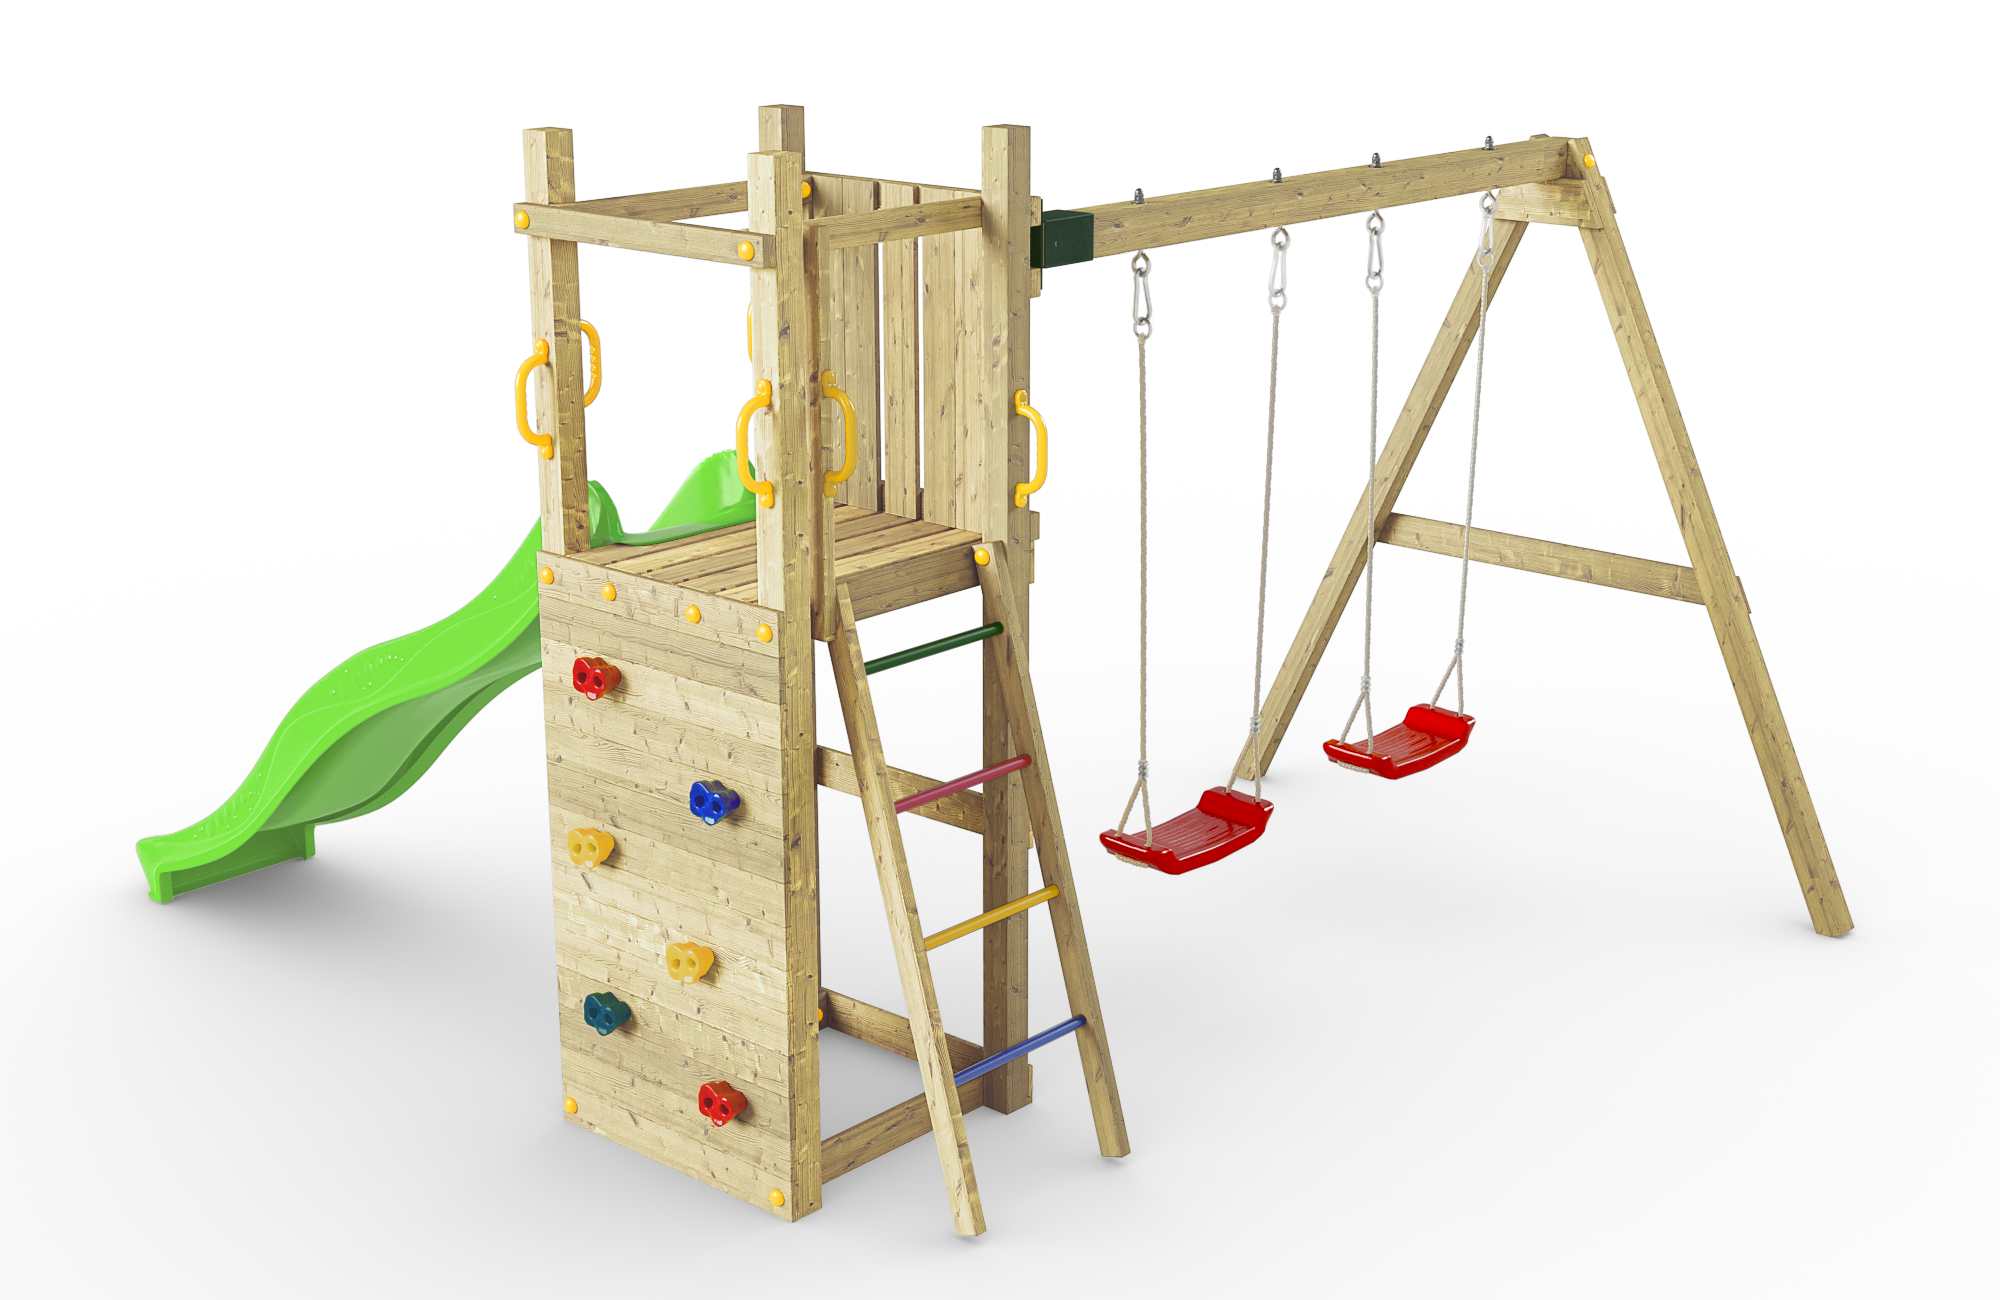 Spielturm Funny 3 aus Holz mit Rutsche, Doppelschaukel und Kletterwand